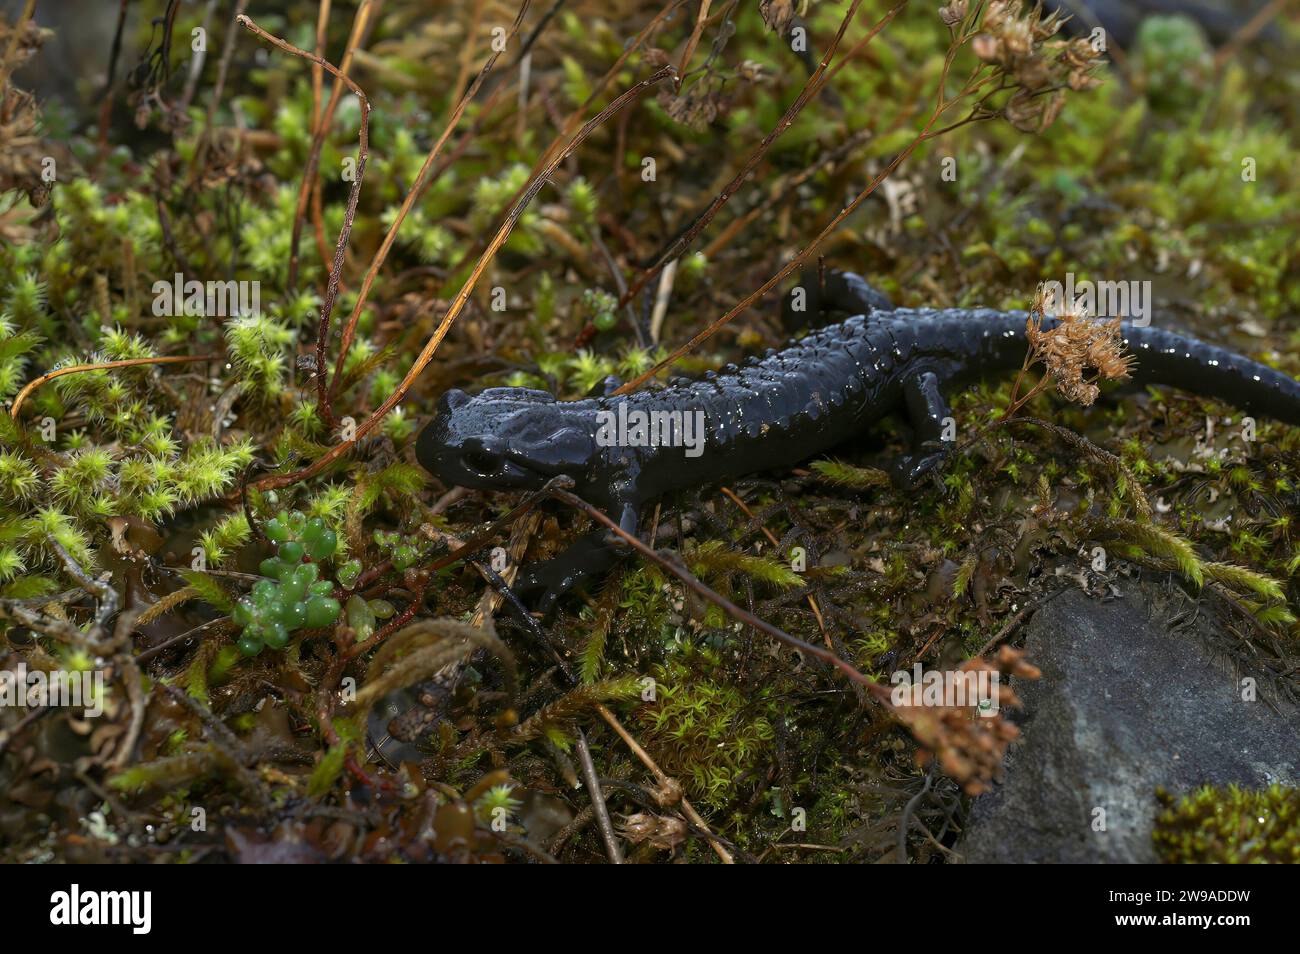 Natural closeup on the rare, charcoal black European alpine salamander, Salamandra atra from the Swiss Alps Stock Photo